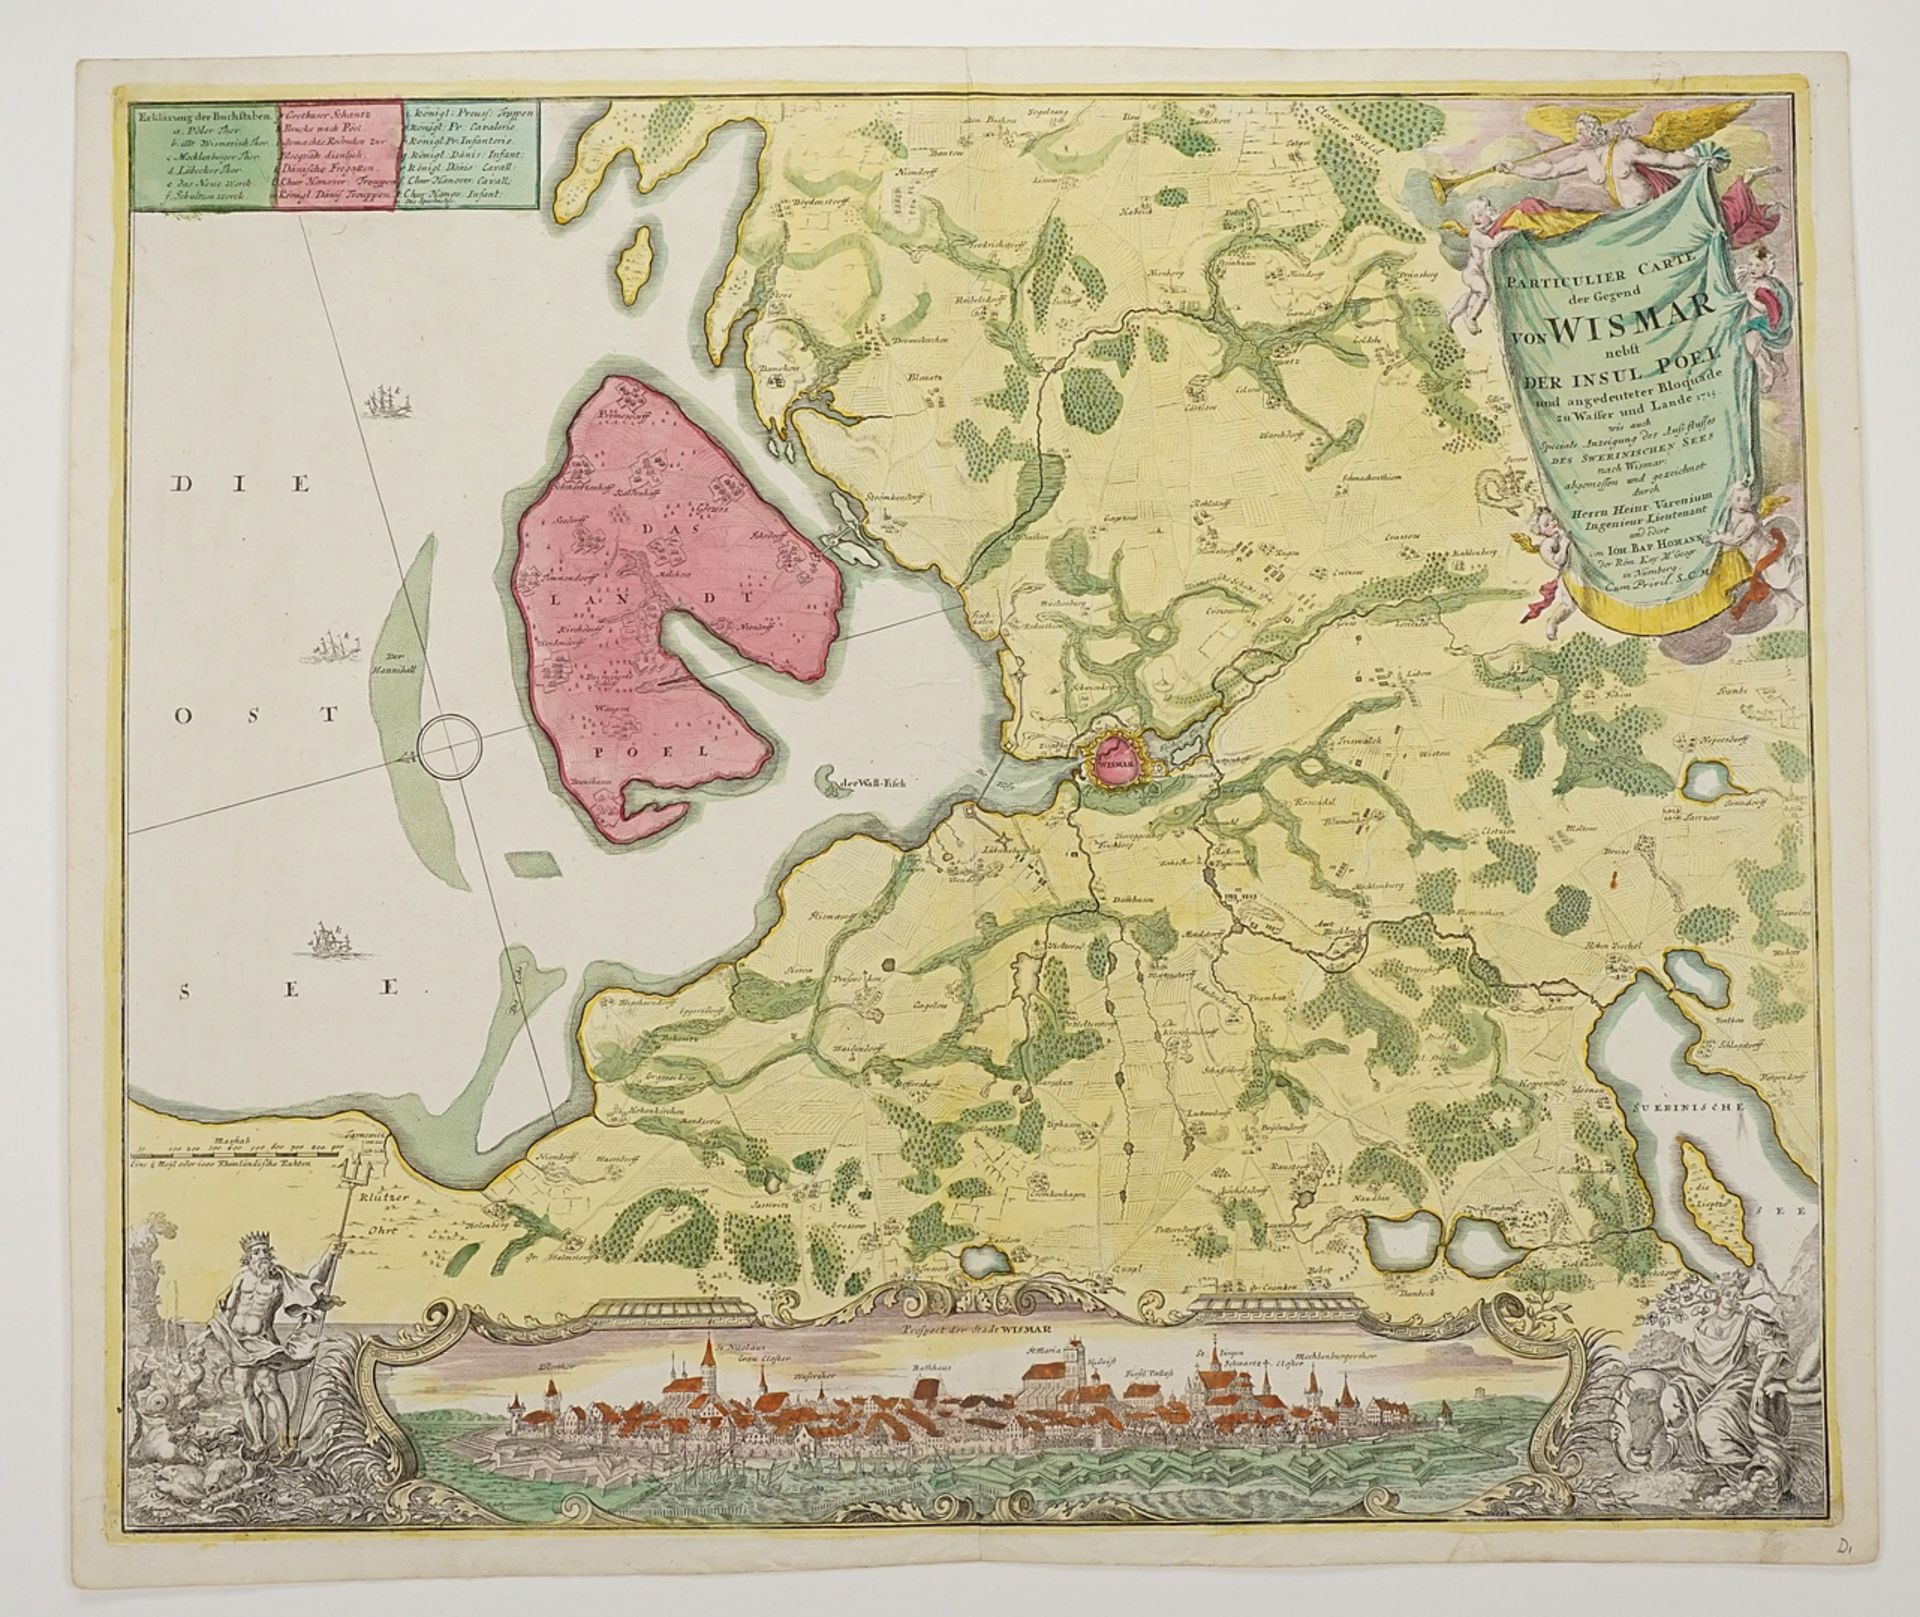 Johann Baptist Homann (1664-1724), "Particulier Carte der Gegend von Wismar" (Map of Wismar region) - Image 3 of 3